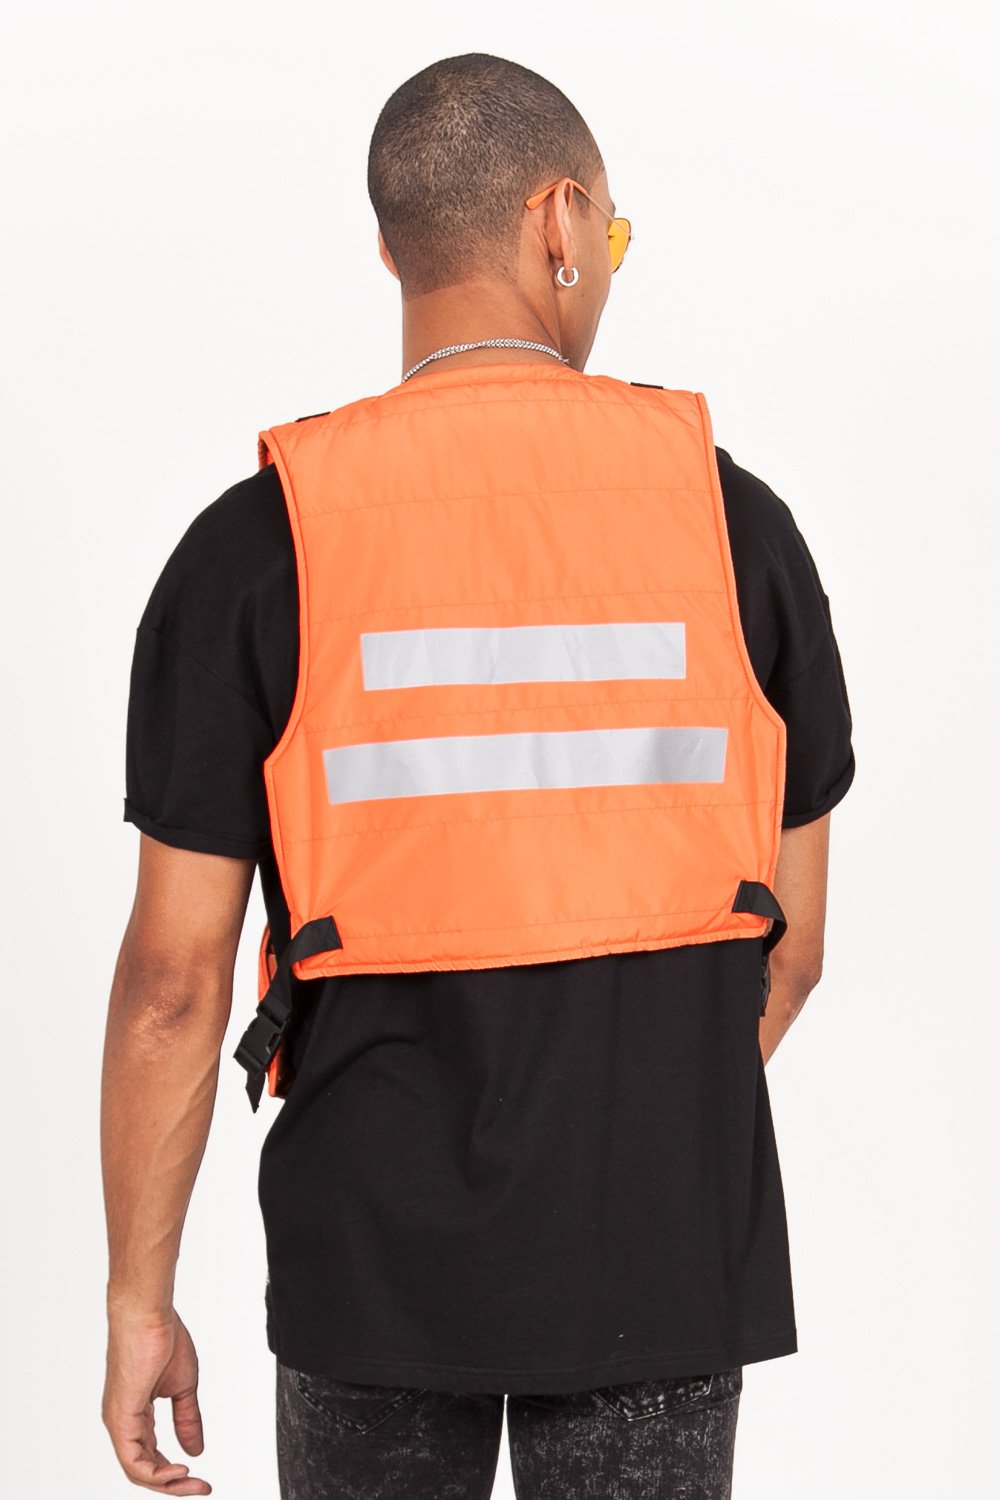 Light Short Tactical Vest Orange Black